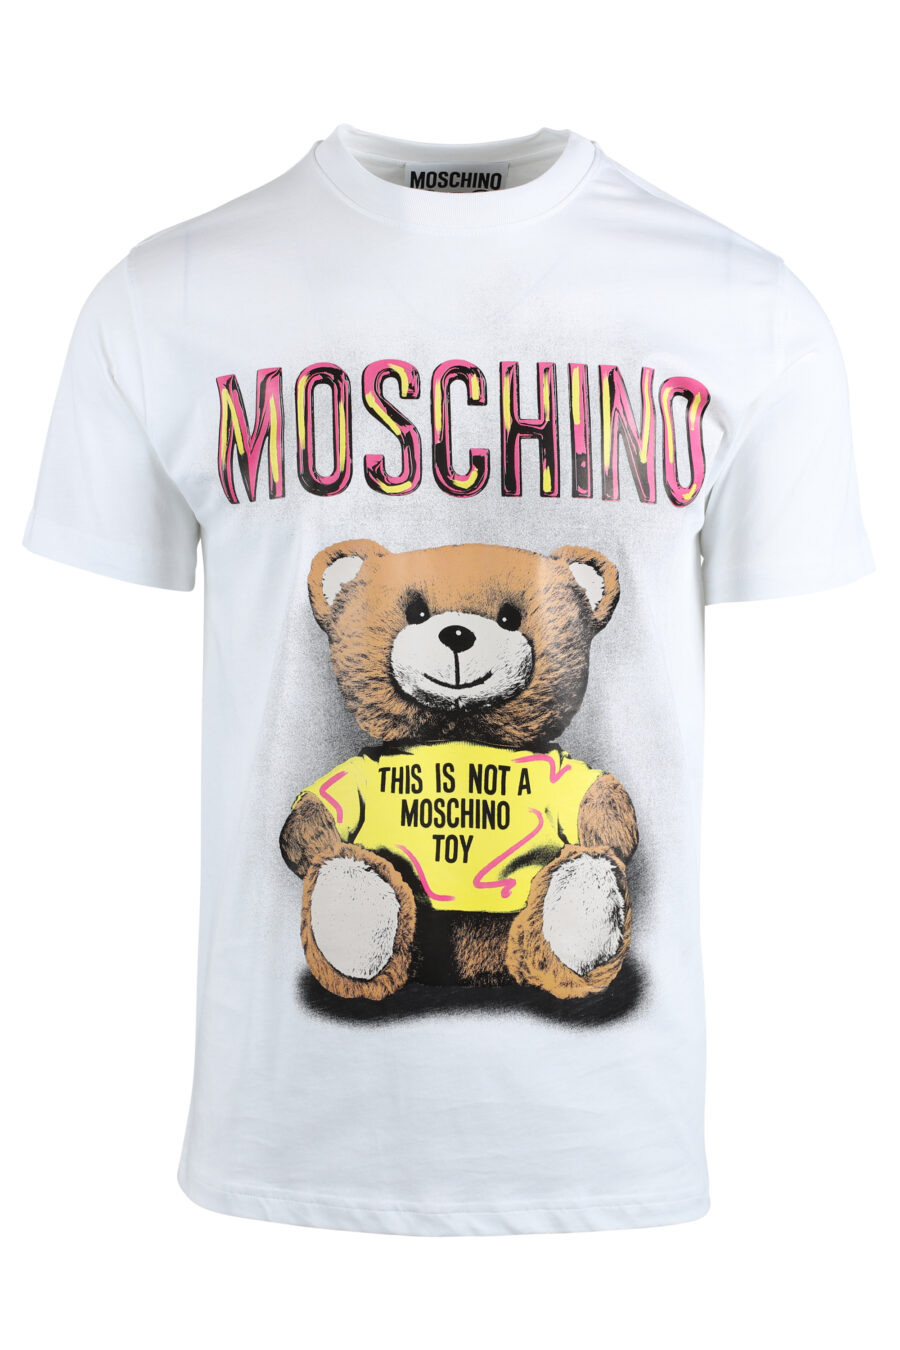 Camiseta blanca con maxilogo "this is not moschino toy" - IMG 4769